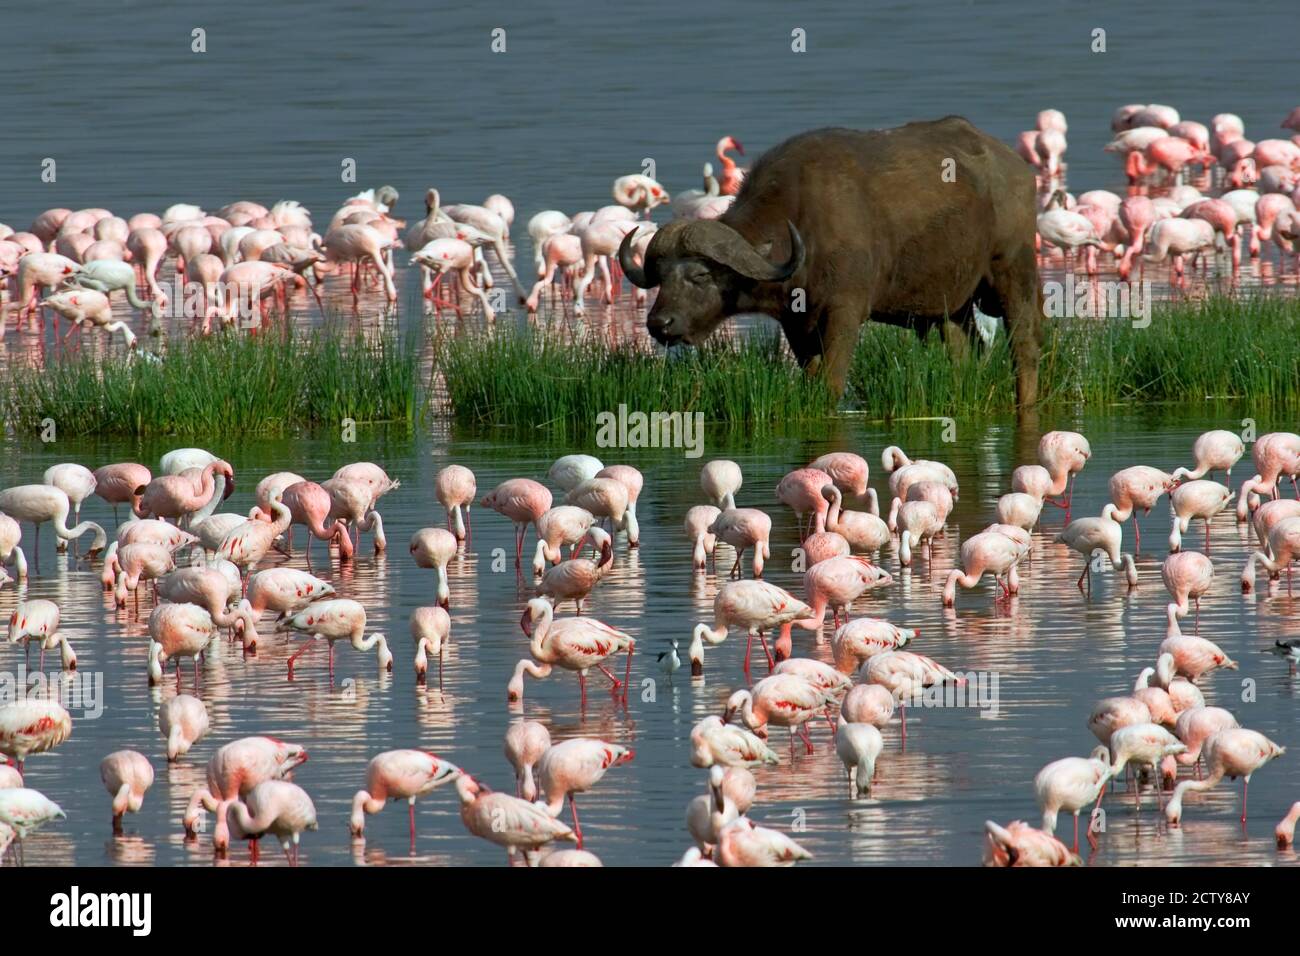 Cape buffalo and lesser flamingos Stock Photo